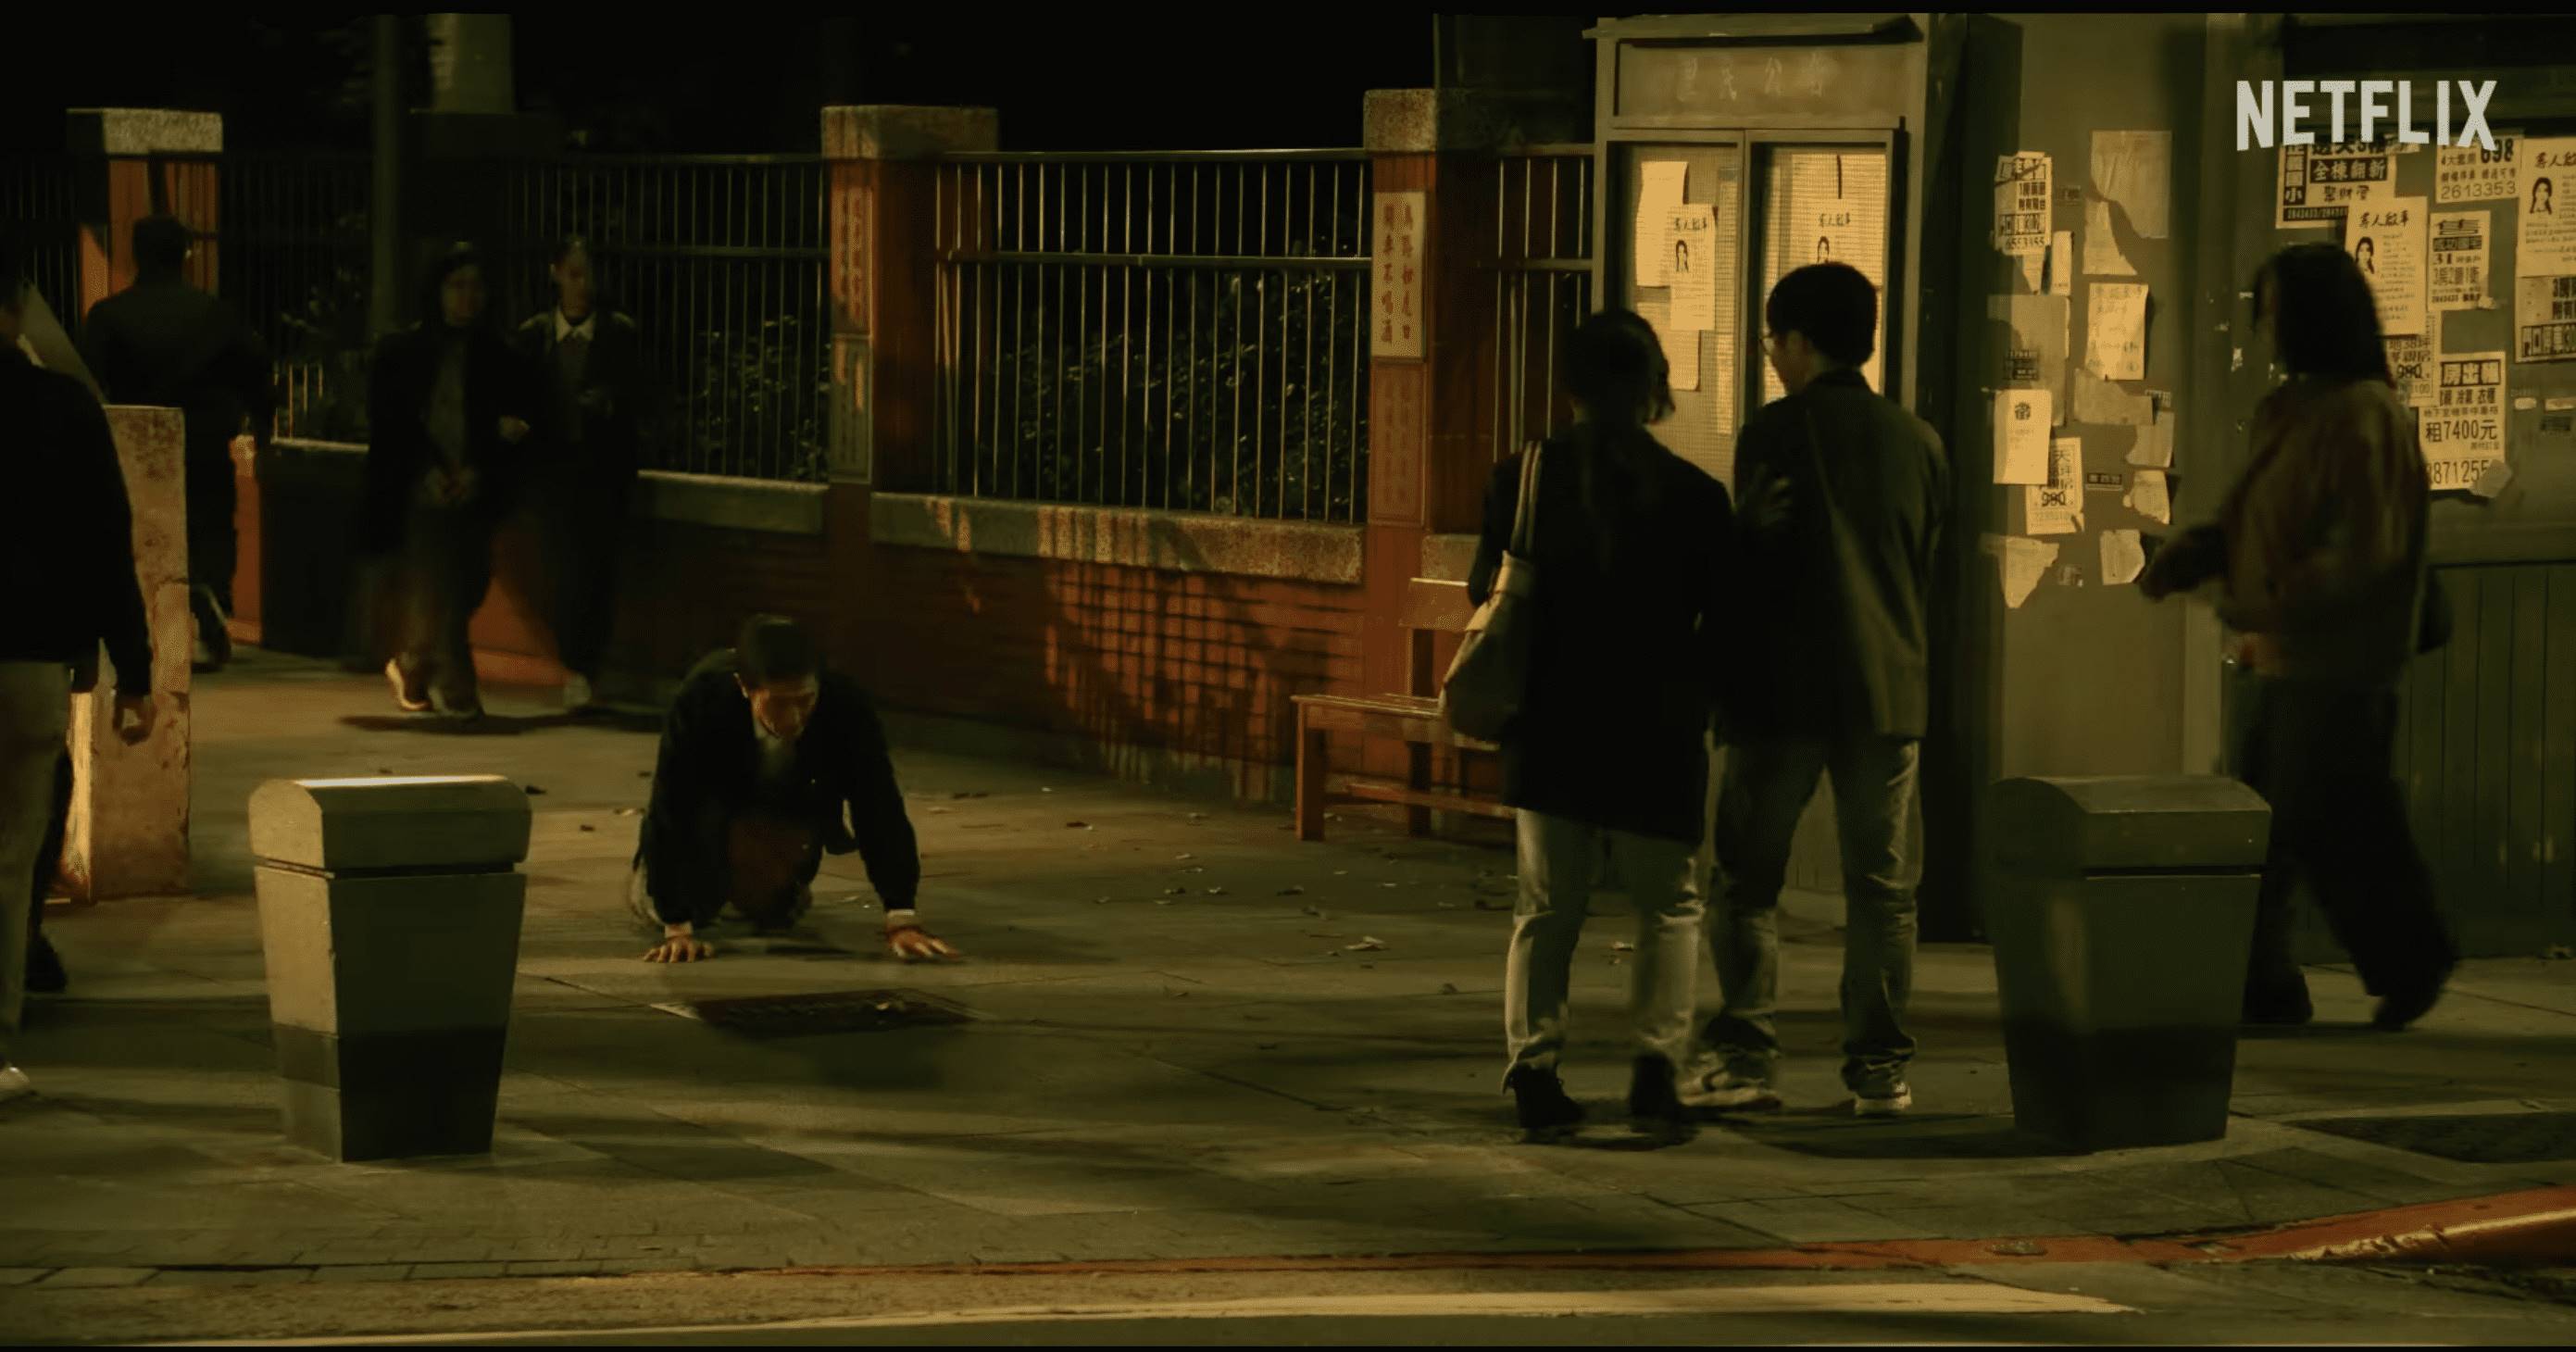 Netflix影集《模仿犯》中馬義男為了見孫女在地上學狗爬行、吠叫。